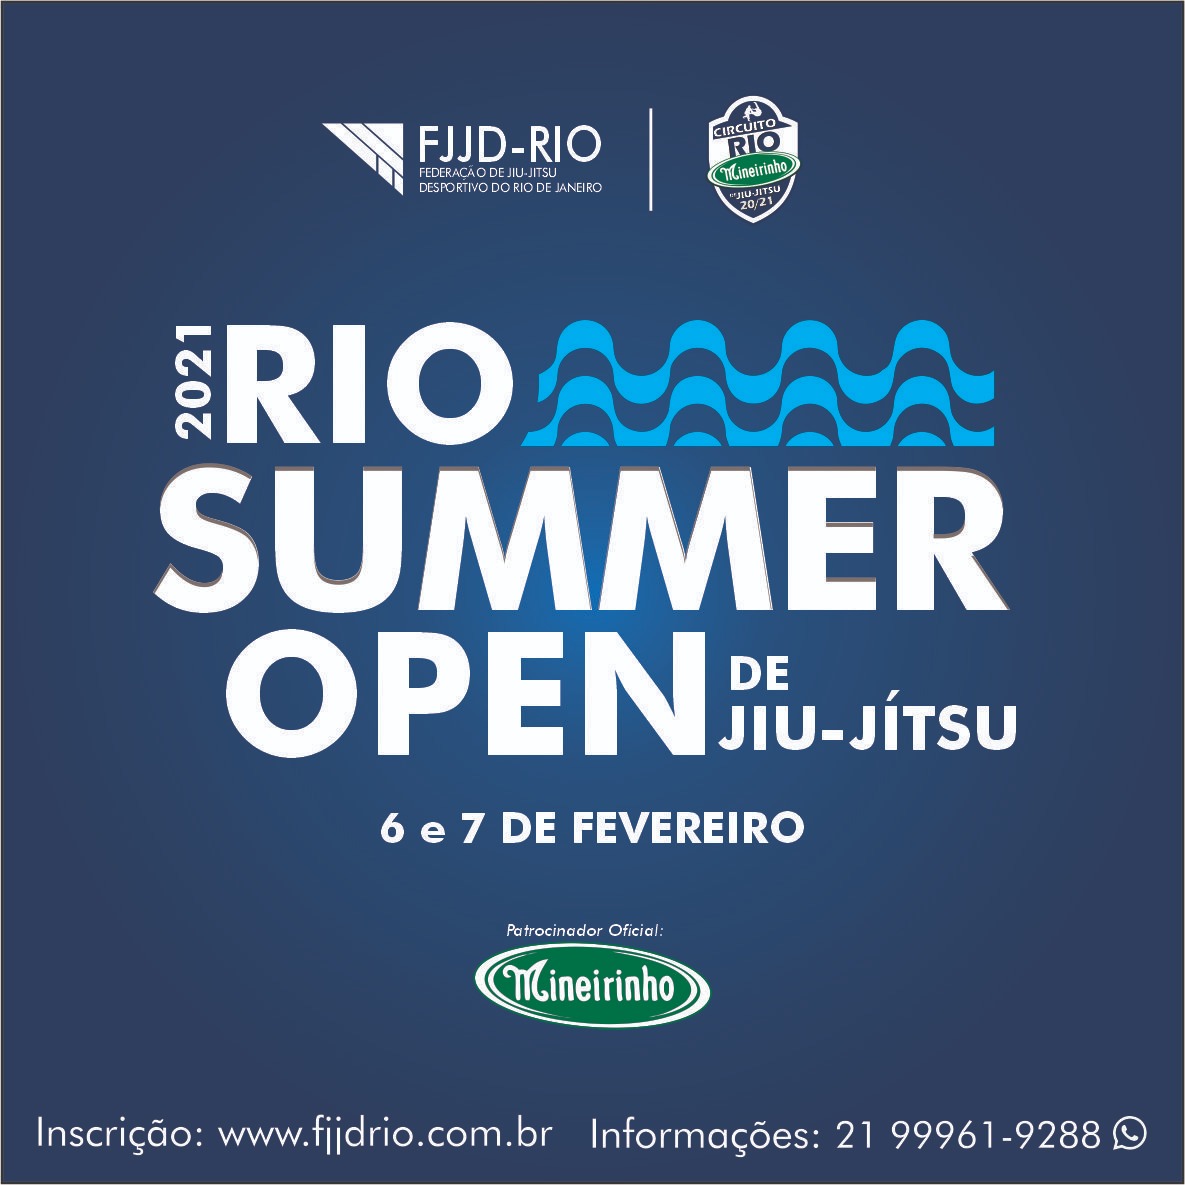 Com pontuação em dobro, FJJD-Rio abre inscrições para a segunda etapa do Circuito Rio Mineirinho; veja os detalhes